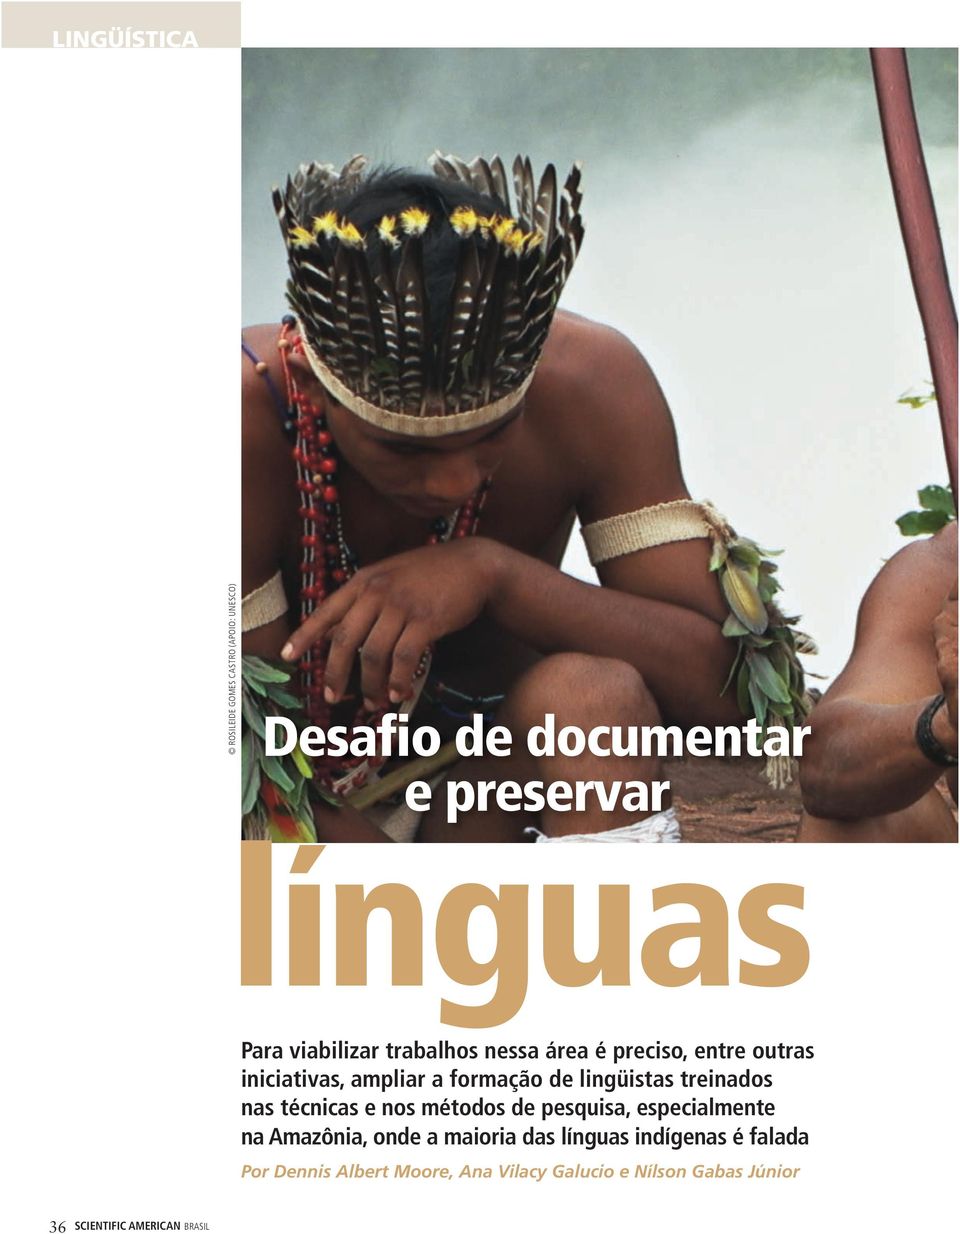 lingüistas treinados nas técnicas e nos mé de pesquisa, especialmente na Amazônia, onde a das línguas